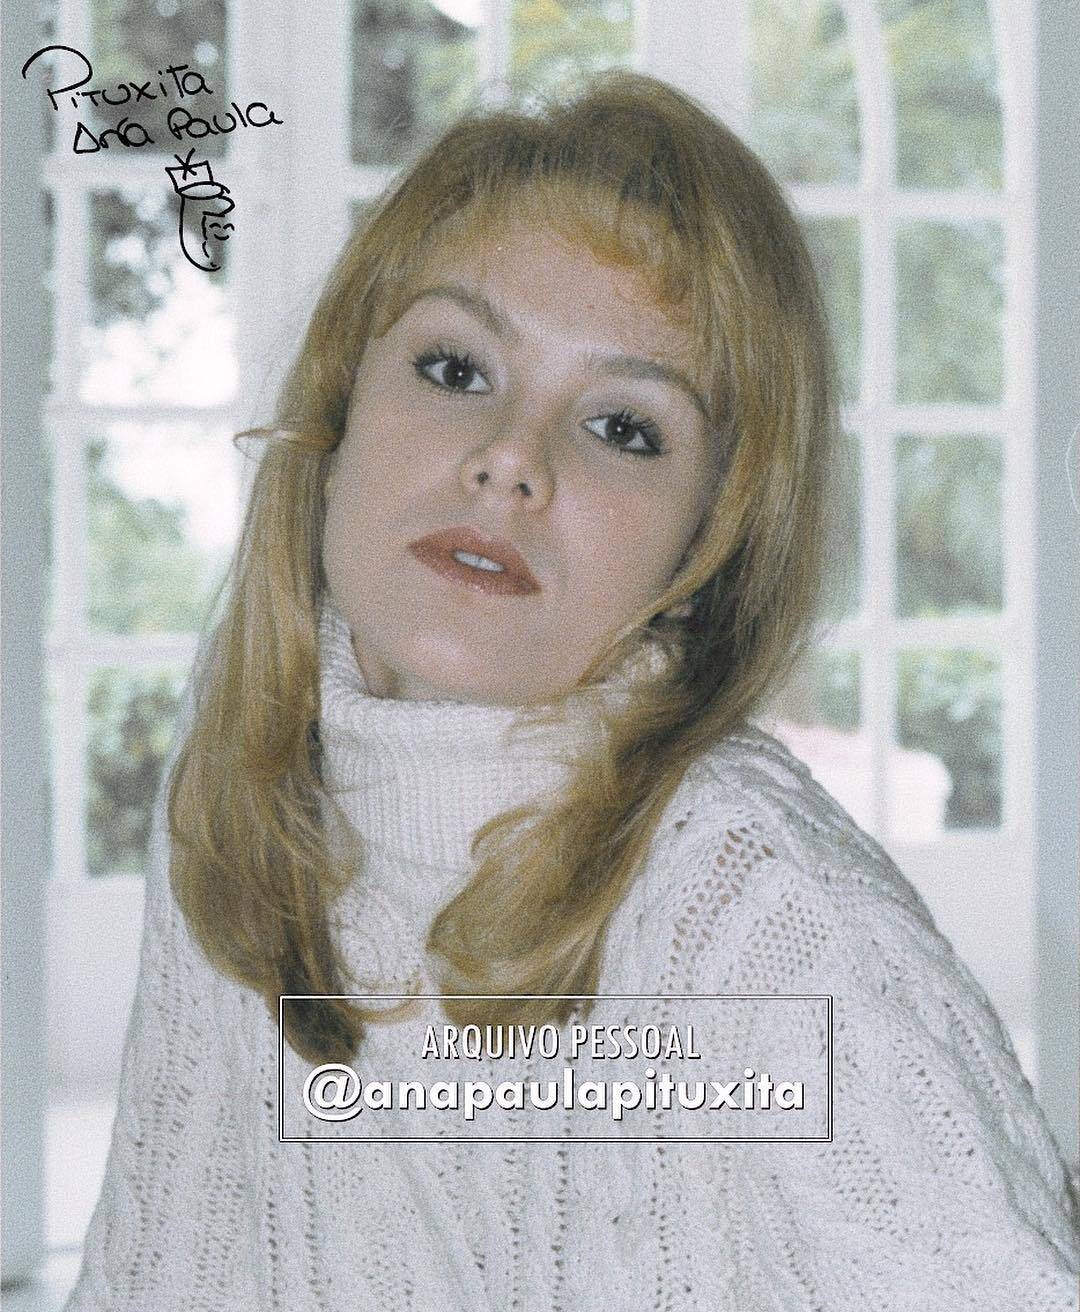 Ana Paula Almeida a ex-paquita que abalou o império de Xuxa. Foto: Reprodução / Instagram